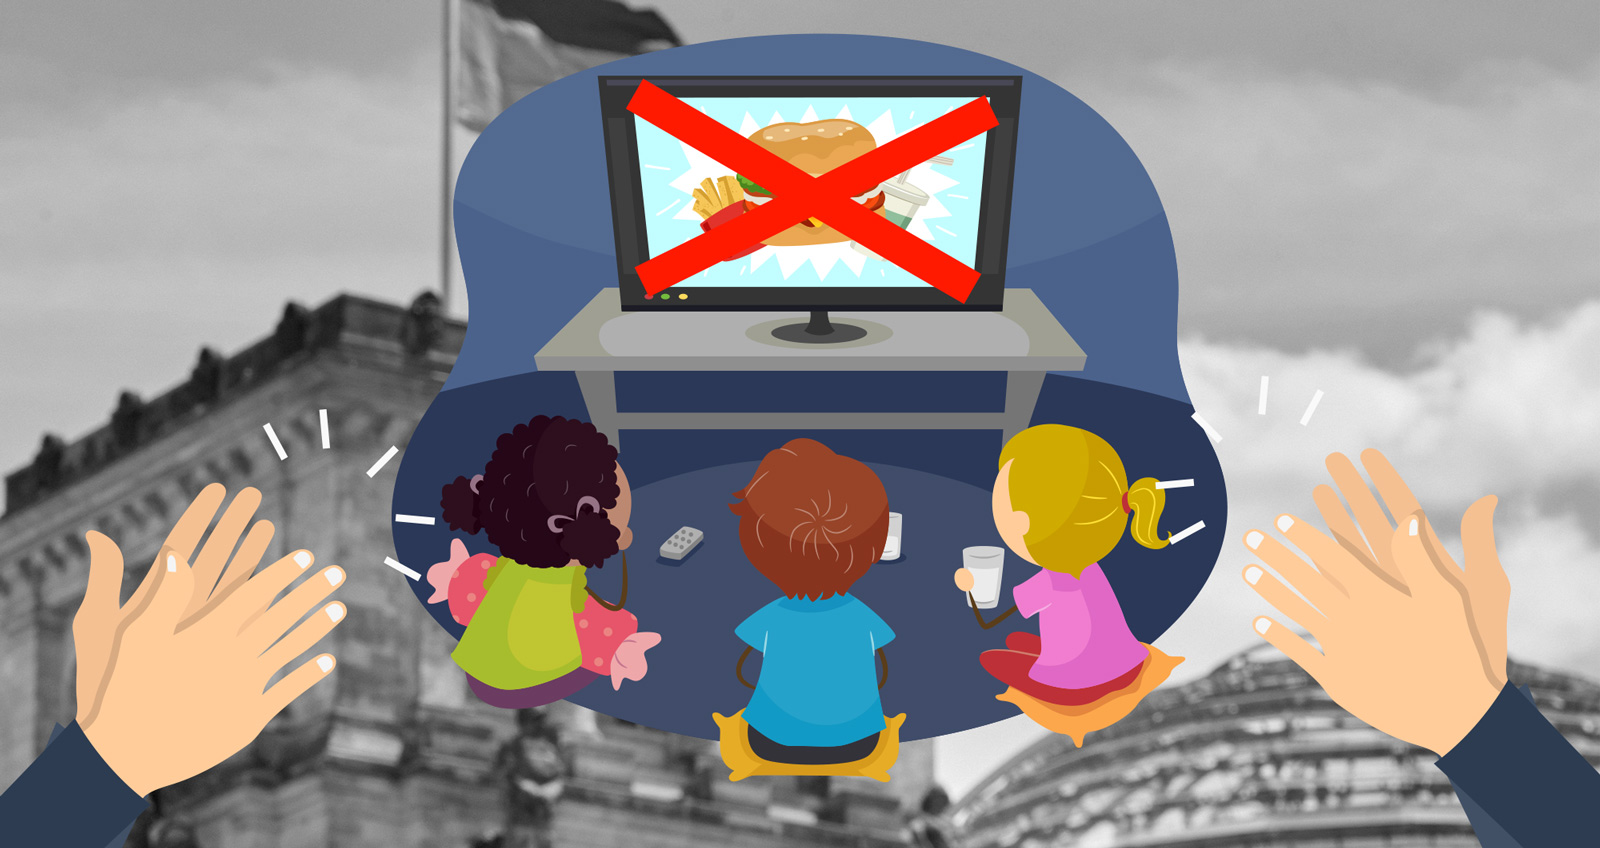 Kinder sitzen vor einem Fernseher und sehen eine Werbung für Fastfood, diese ist durchgestrichen, im Hintergrund die Kuppel des Reichstages, davor klatschende Hände